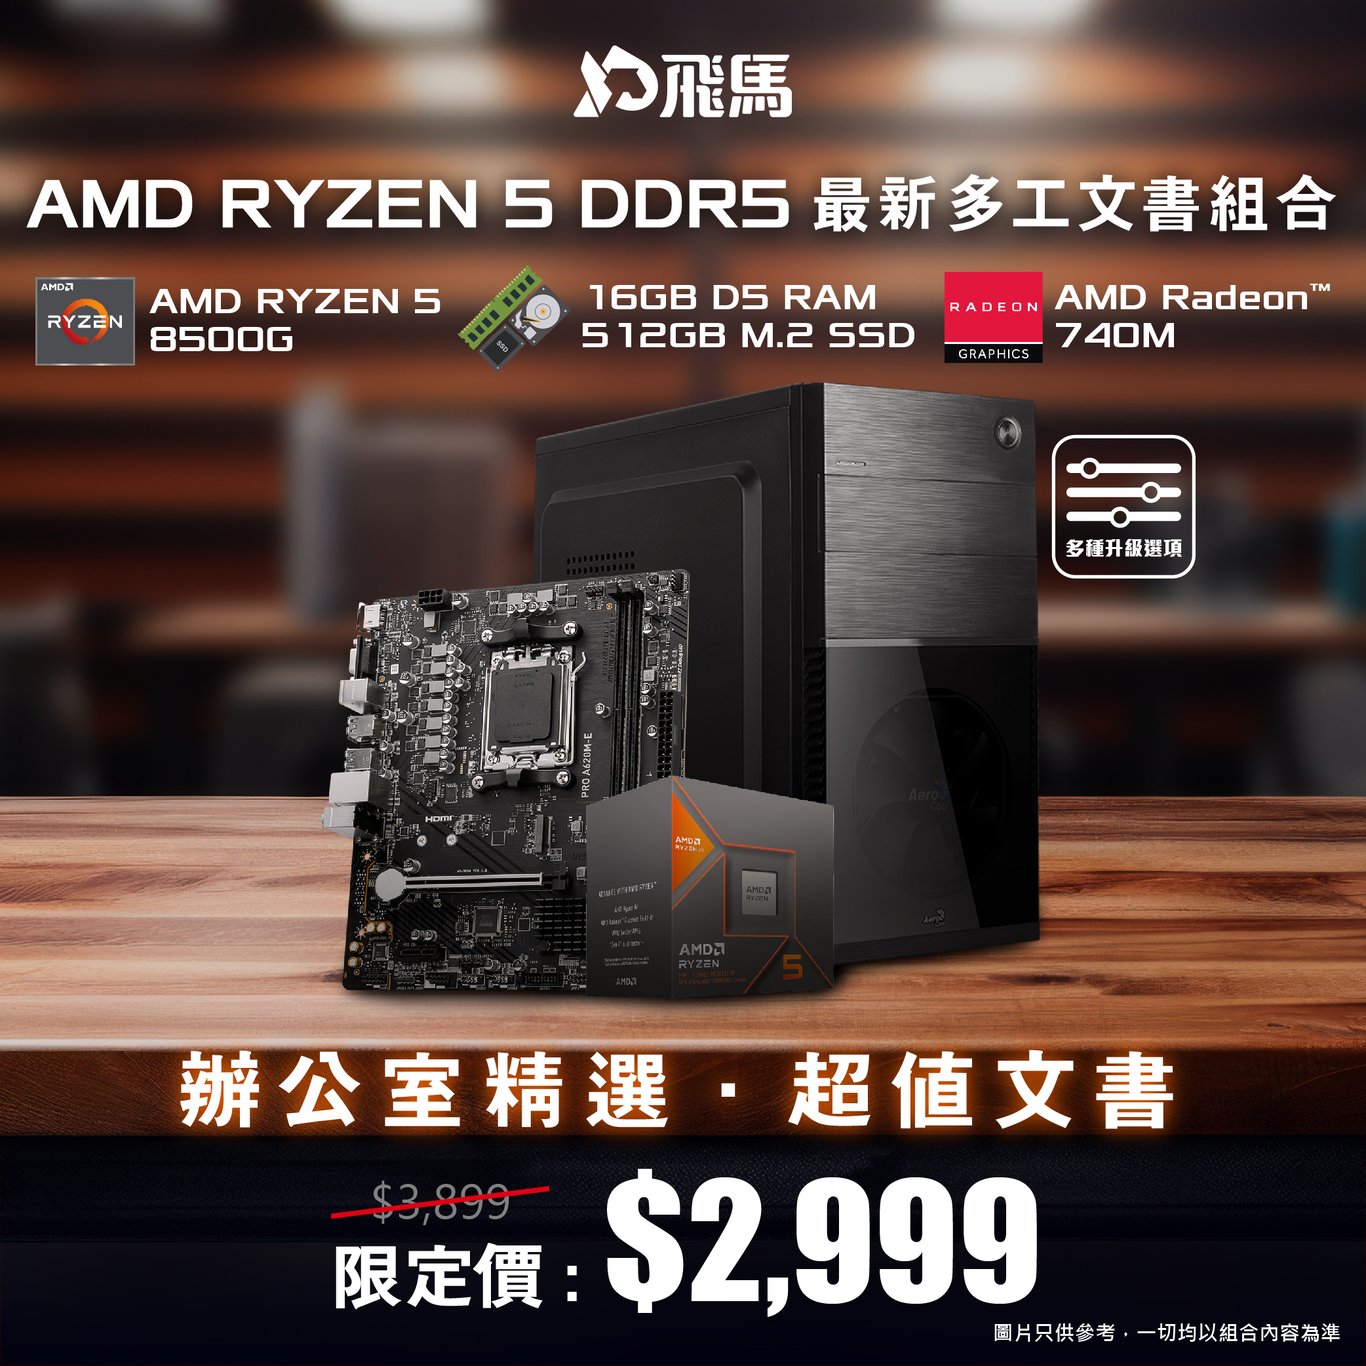 【辦公室精選】AMD RYZEN 5 DDR5 最新多工文書組合